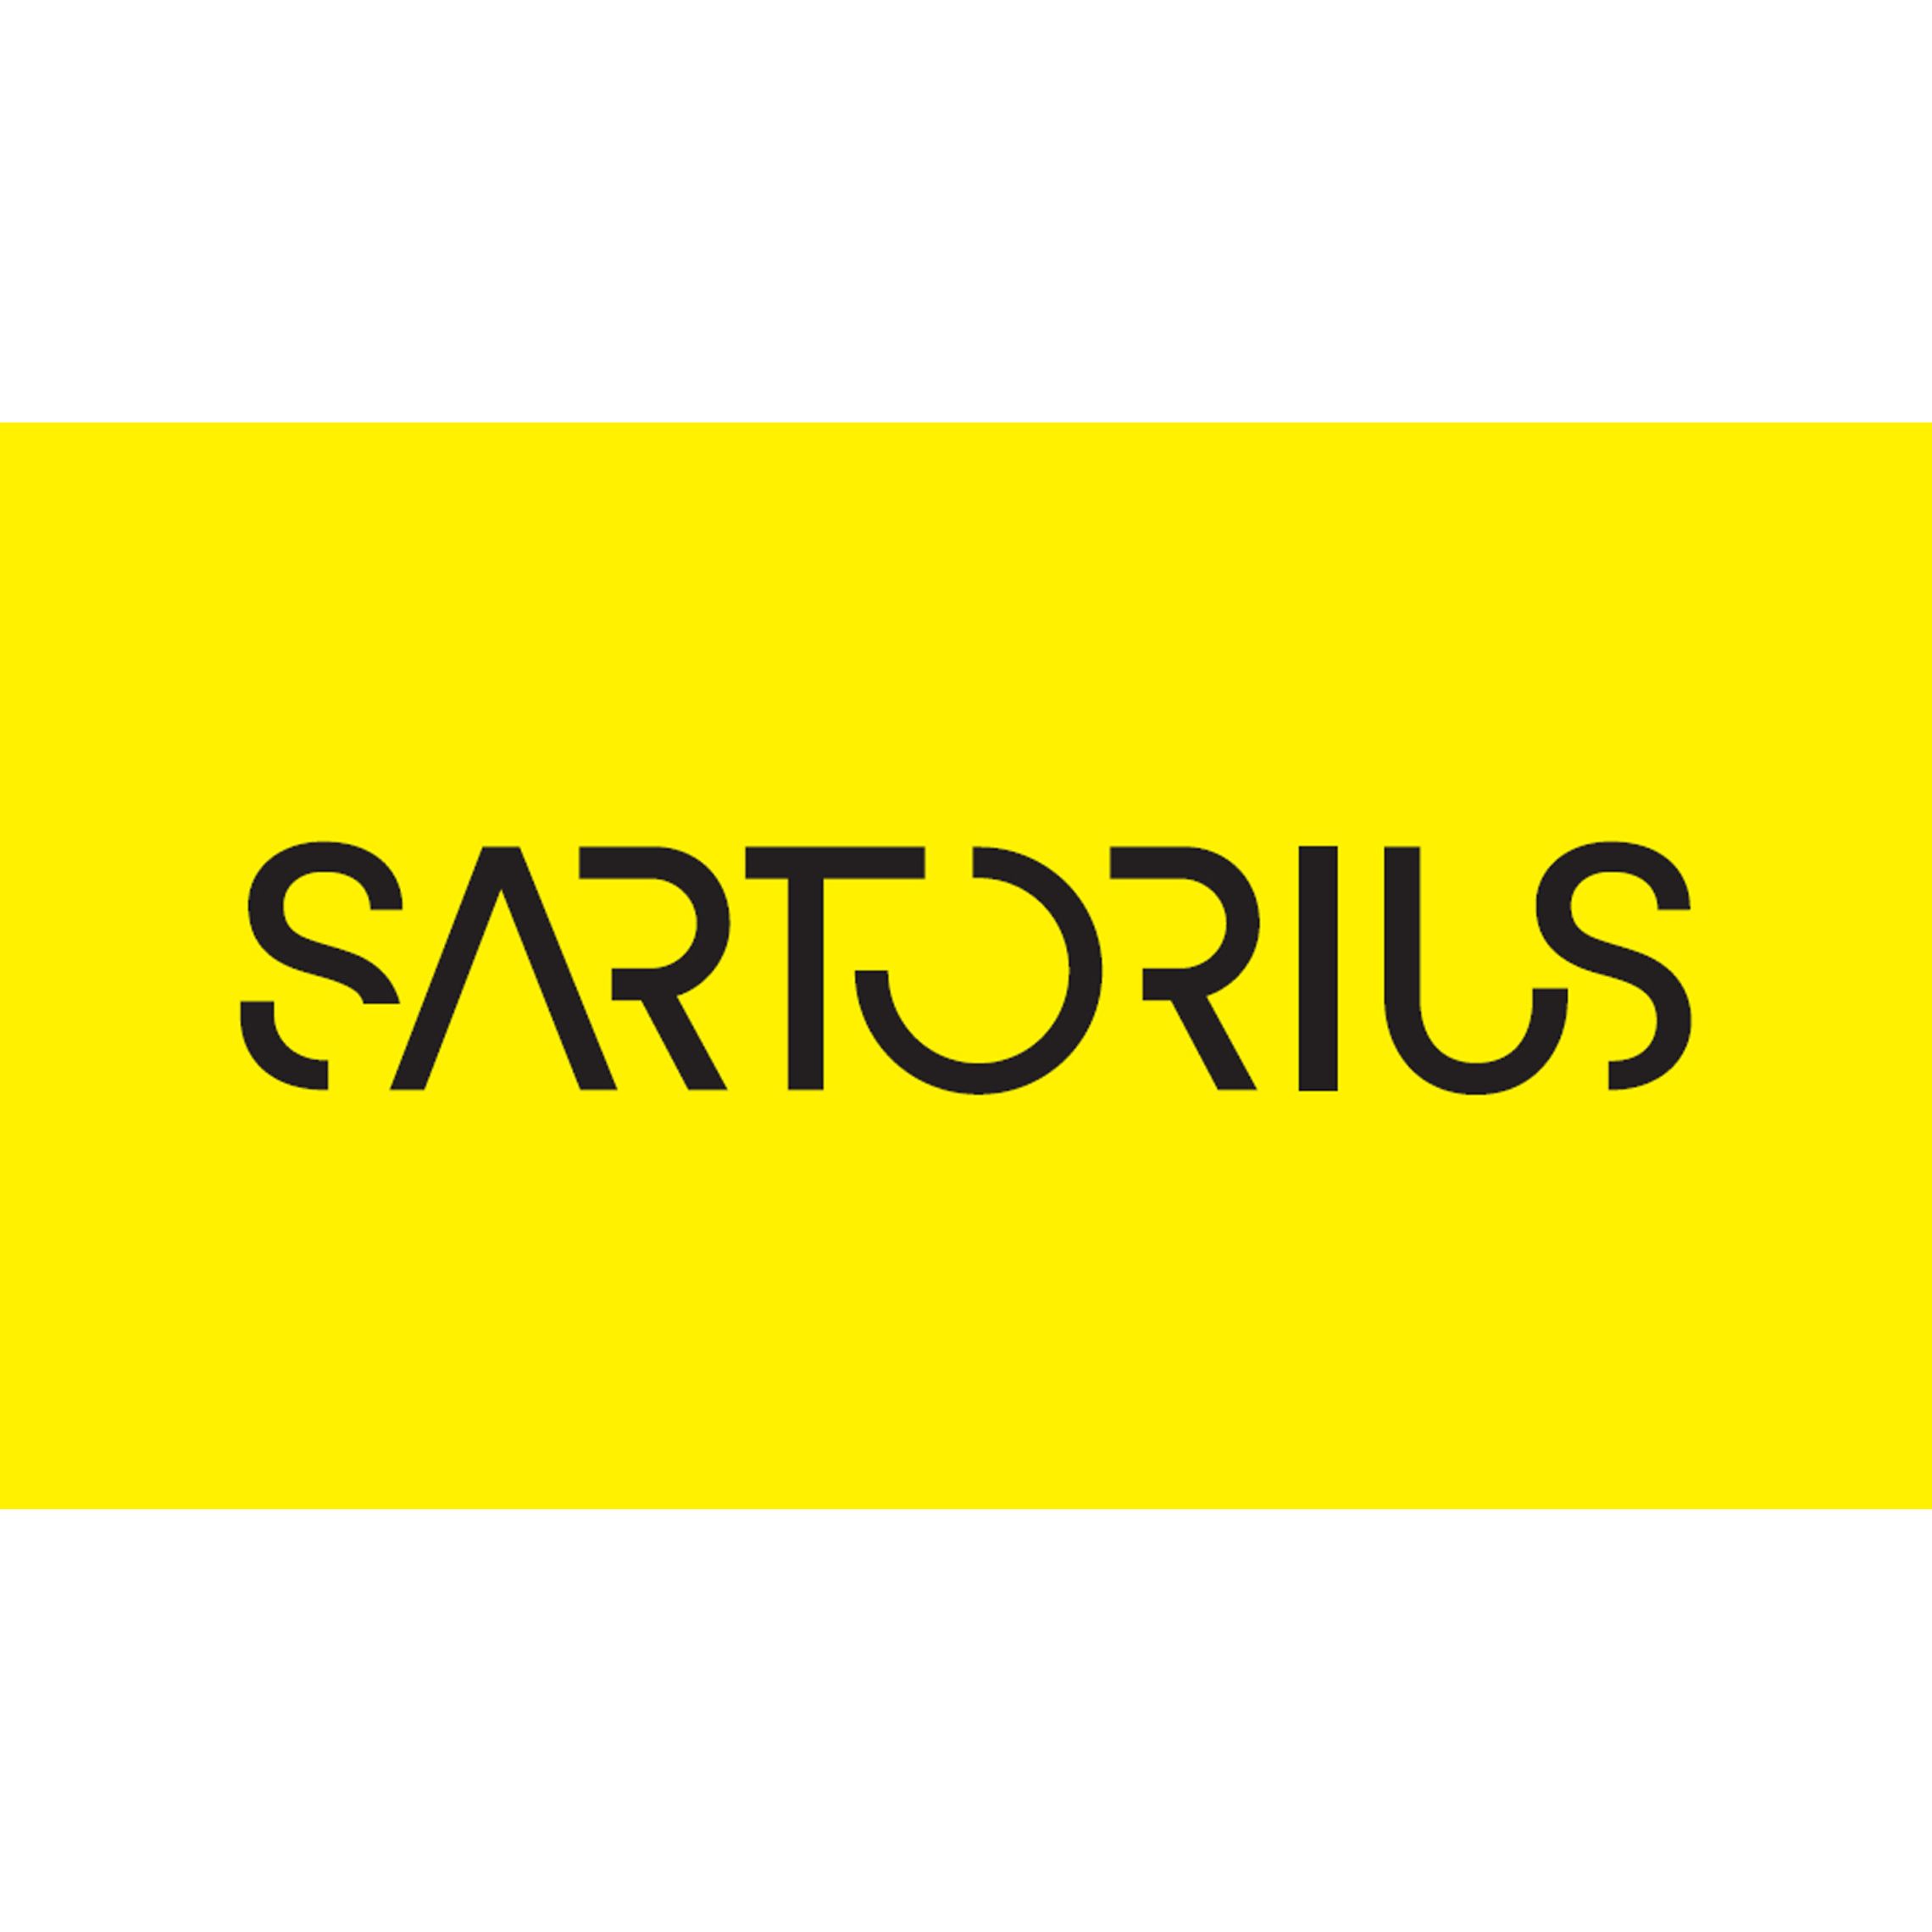 Sartorius | Ario Exir Mandegar